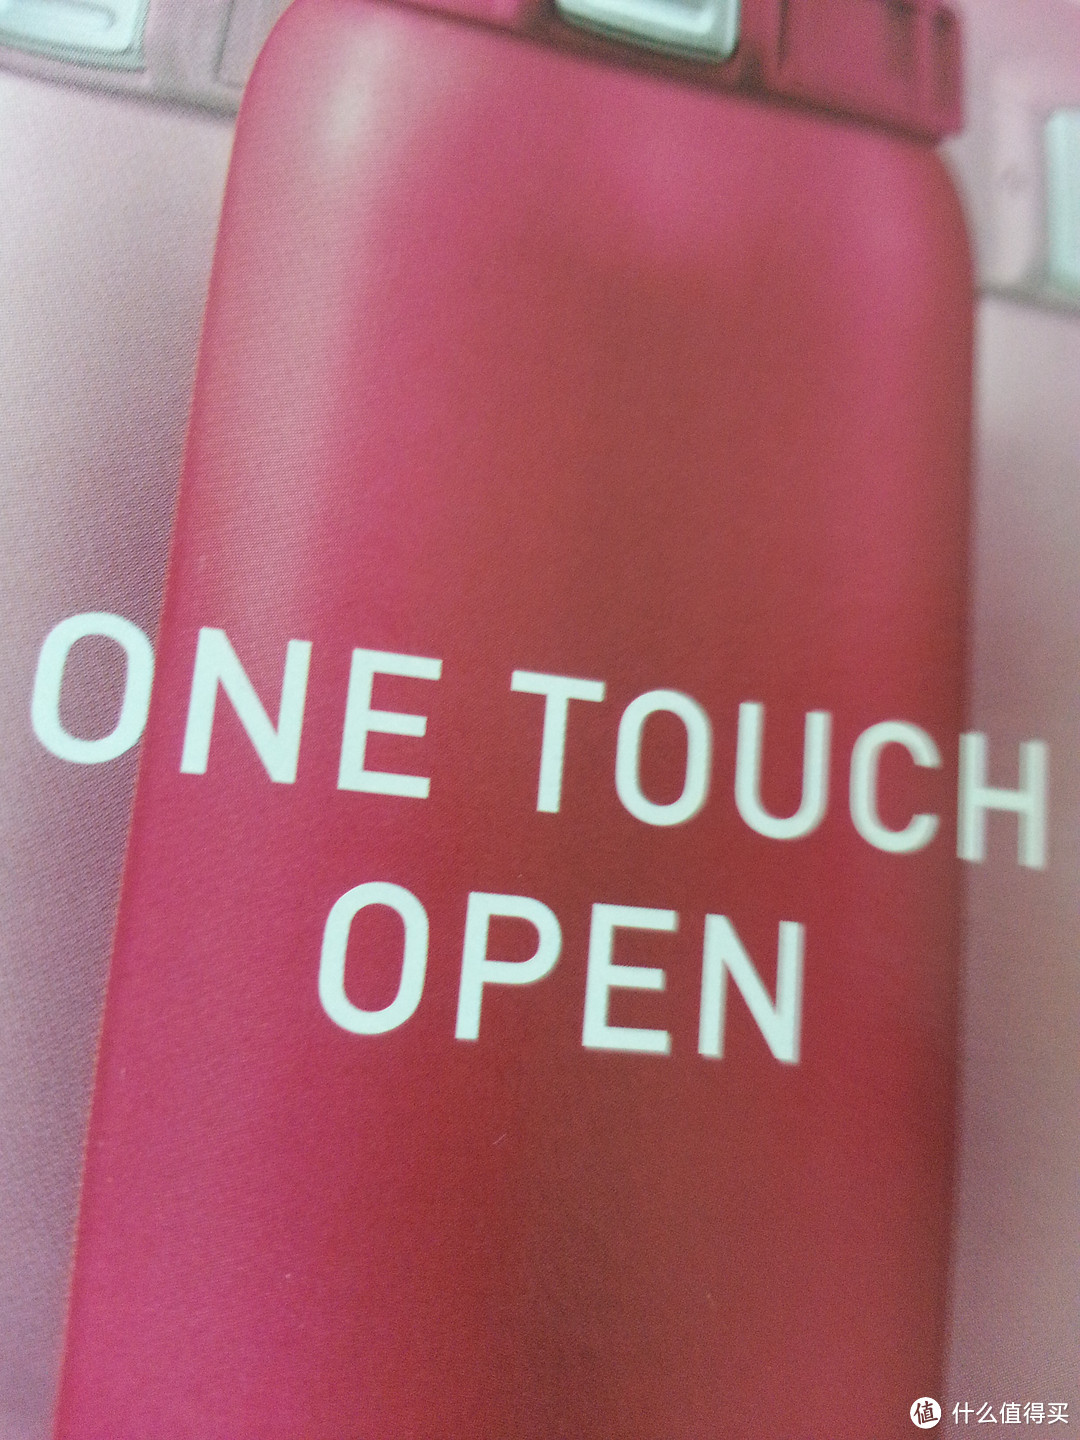 一键开启 one touch open 听起来就舒服